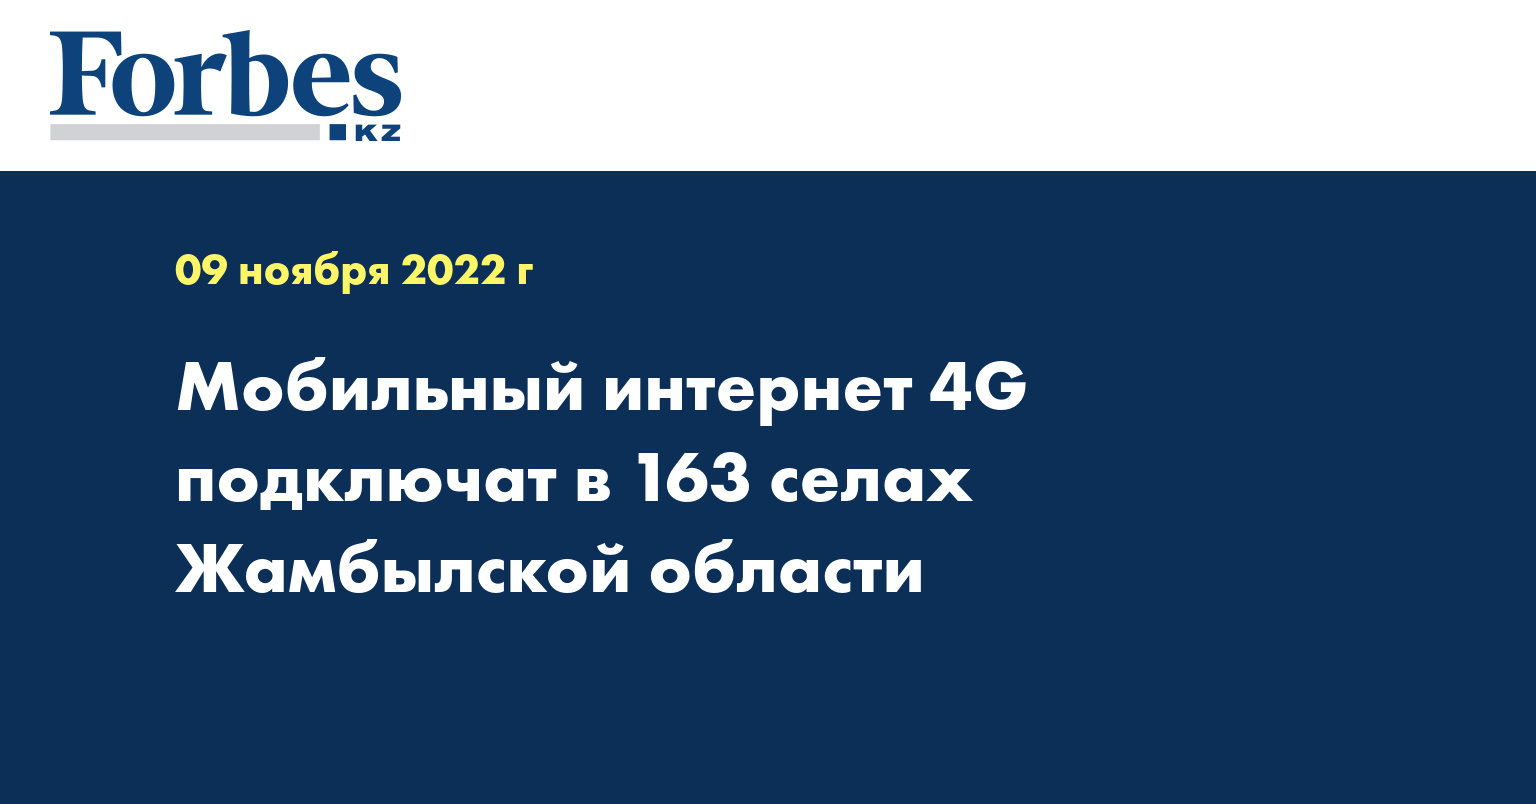 Мобильный интернет 4G подключат в 163 селах Жамбылской области